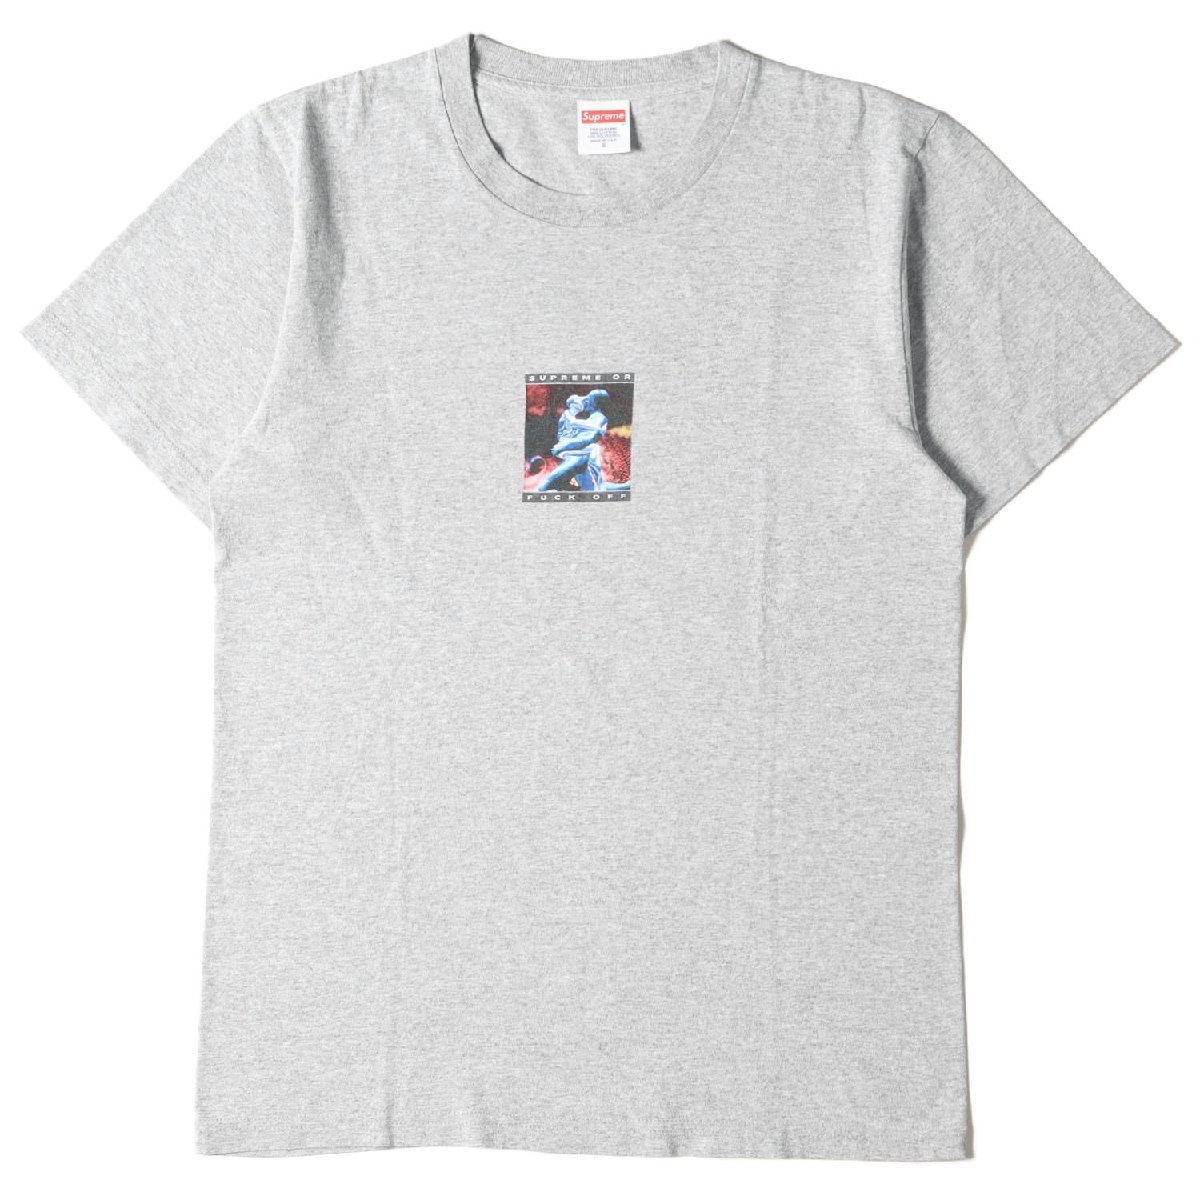 Supreme シュプリーム Tシャツ サイズ:S バーチャル・ウォーズ クルーネック Cyber Tee 17SS ヘザーグレー トップス カットソー 半袖